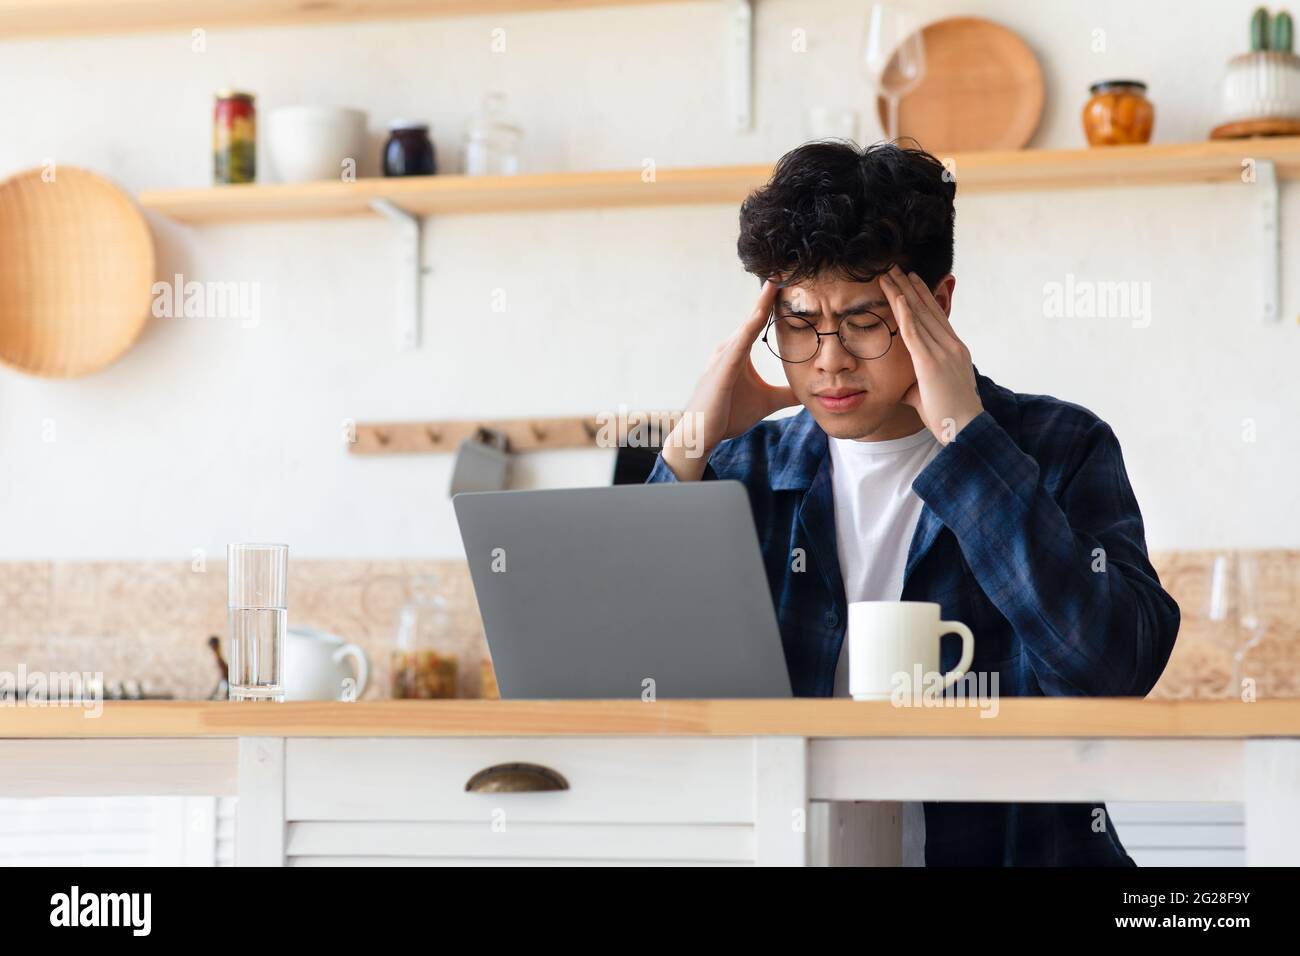 Probleme bei der Arbeit, Überlastung, Migräne, Krankheitssymptome während der Selbstisolation Stockfoto